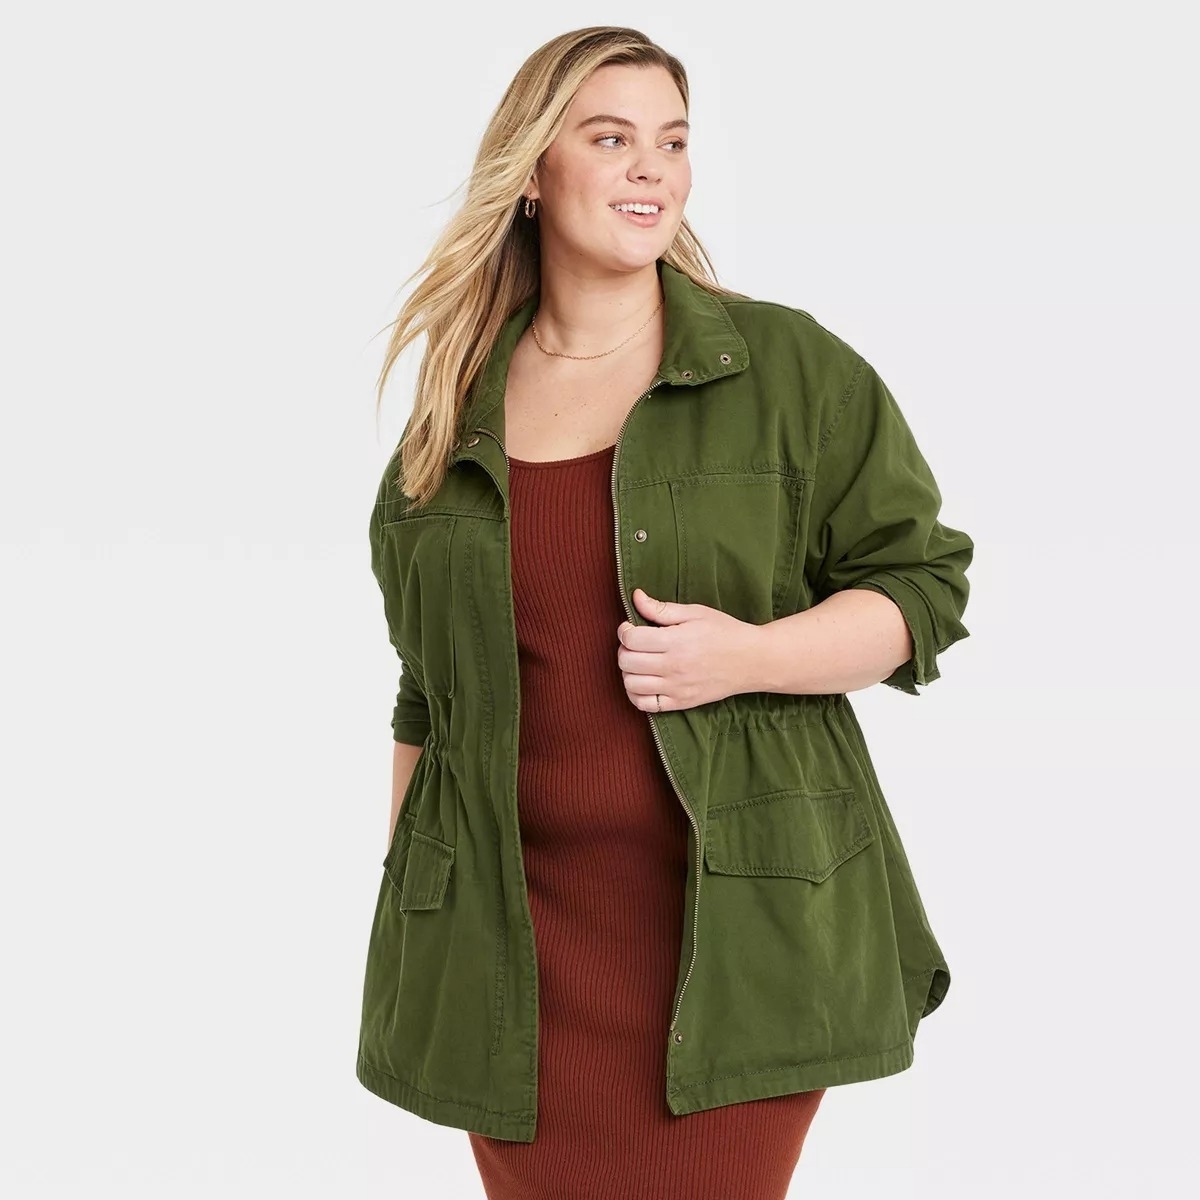 Model in anolive green field jacket